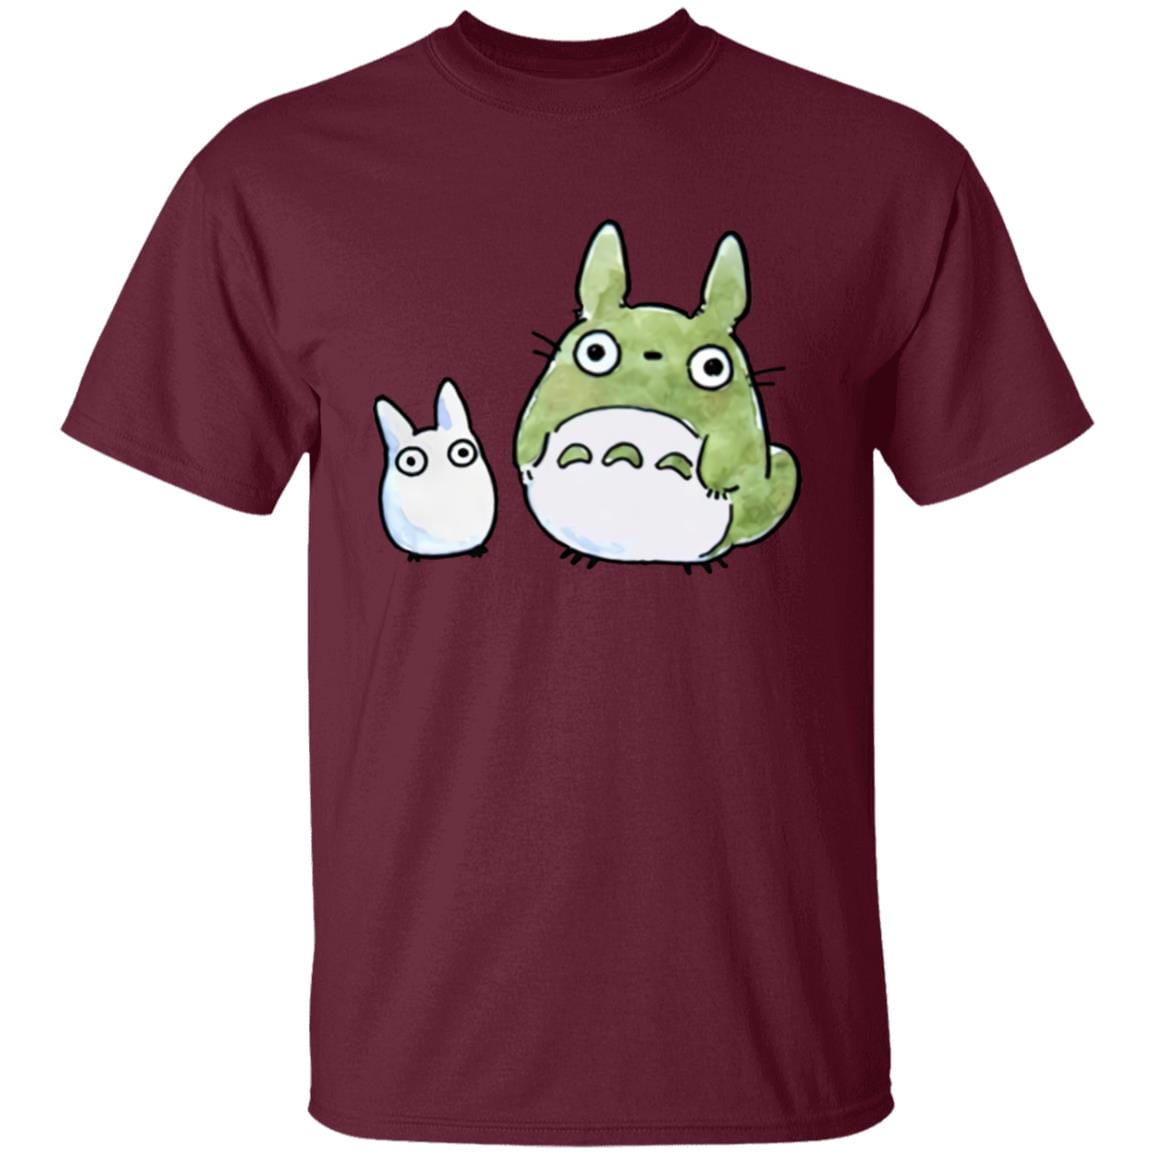 Totoro Family Cute Drawing T Shirt Ghibli Store ghibli.store